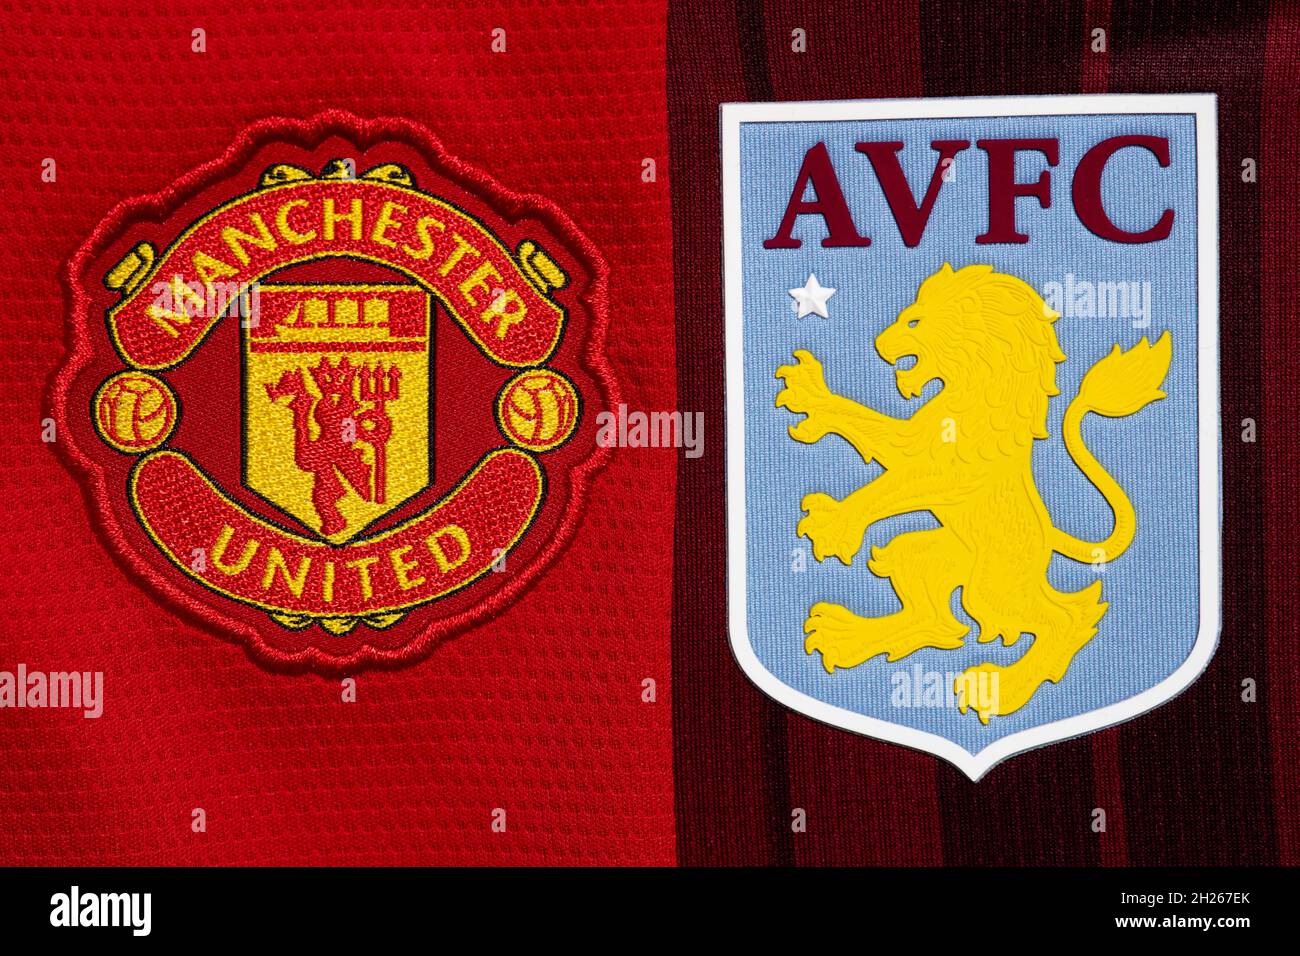 Nahaufnahme des Vereinswappens von man United und Aston Villa. Stockfoto